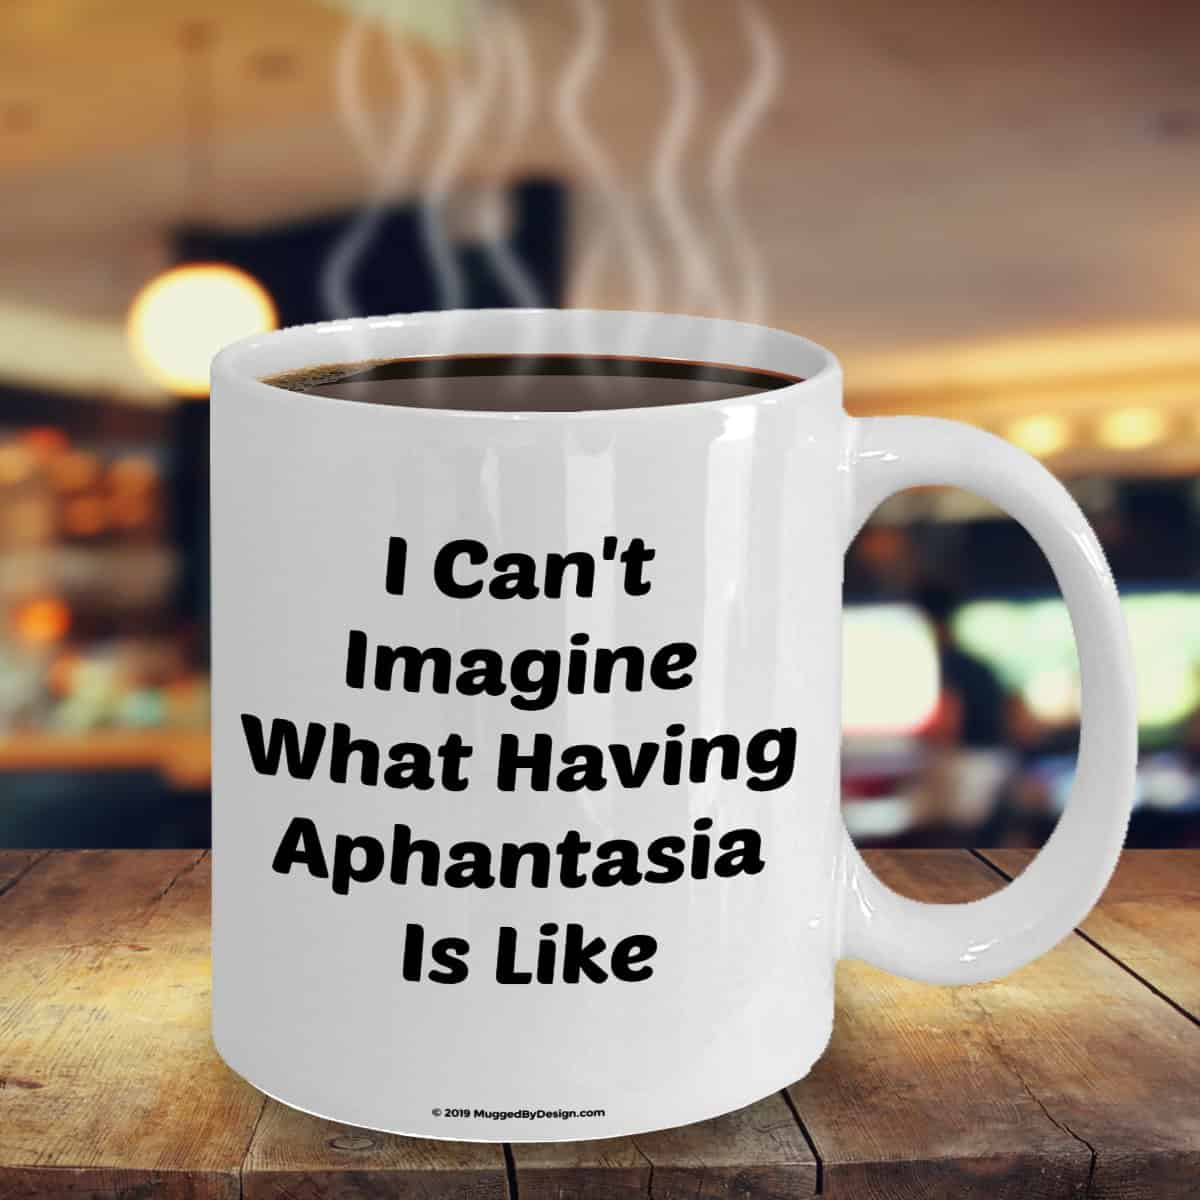 Photo of a mug about aphantasia